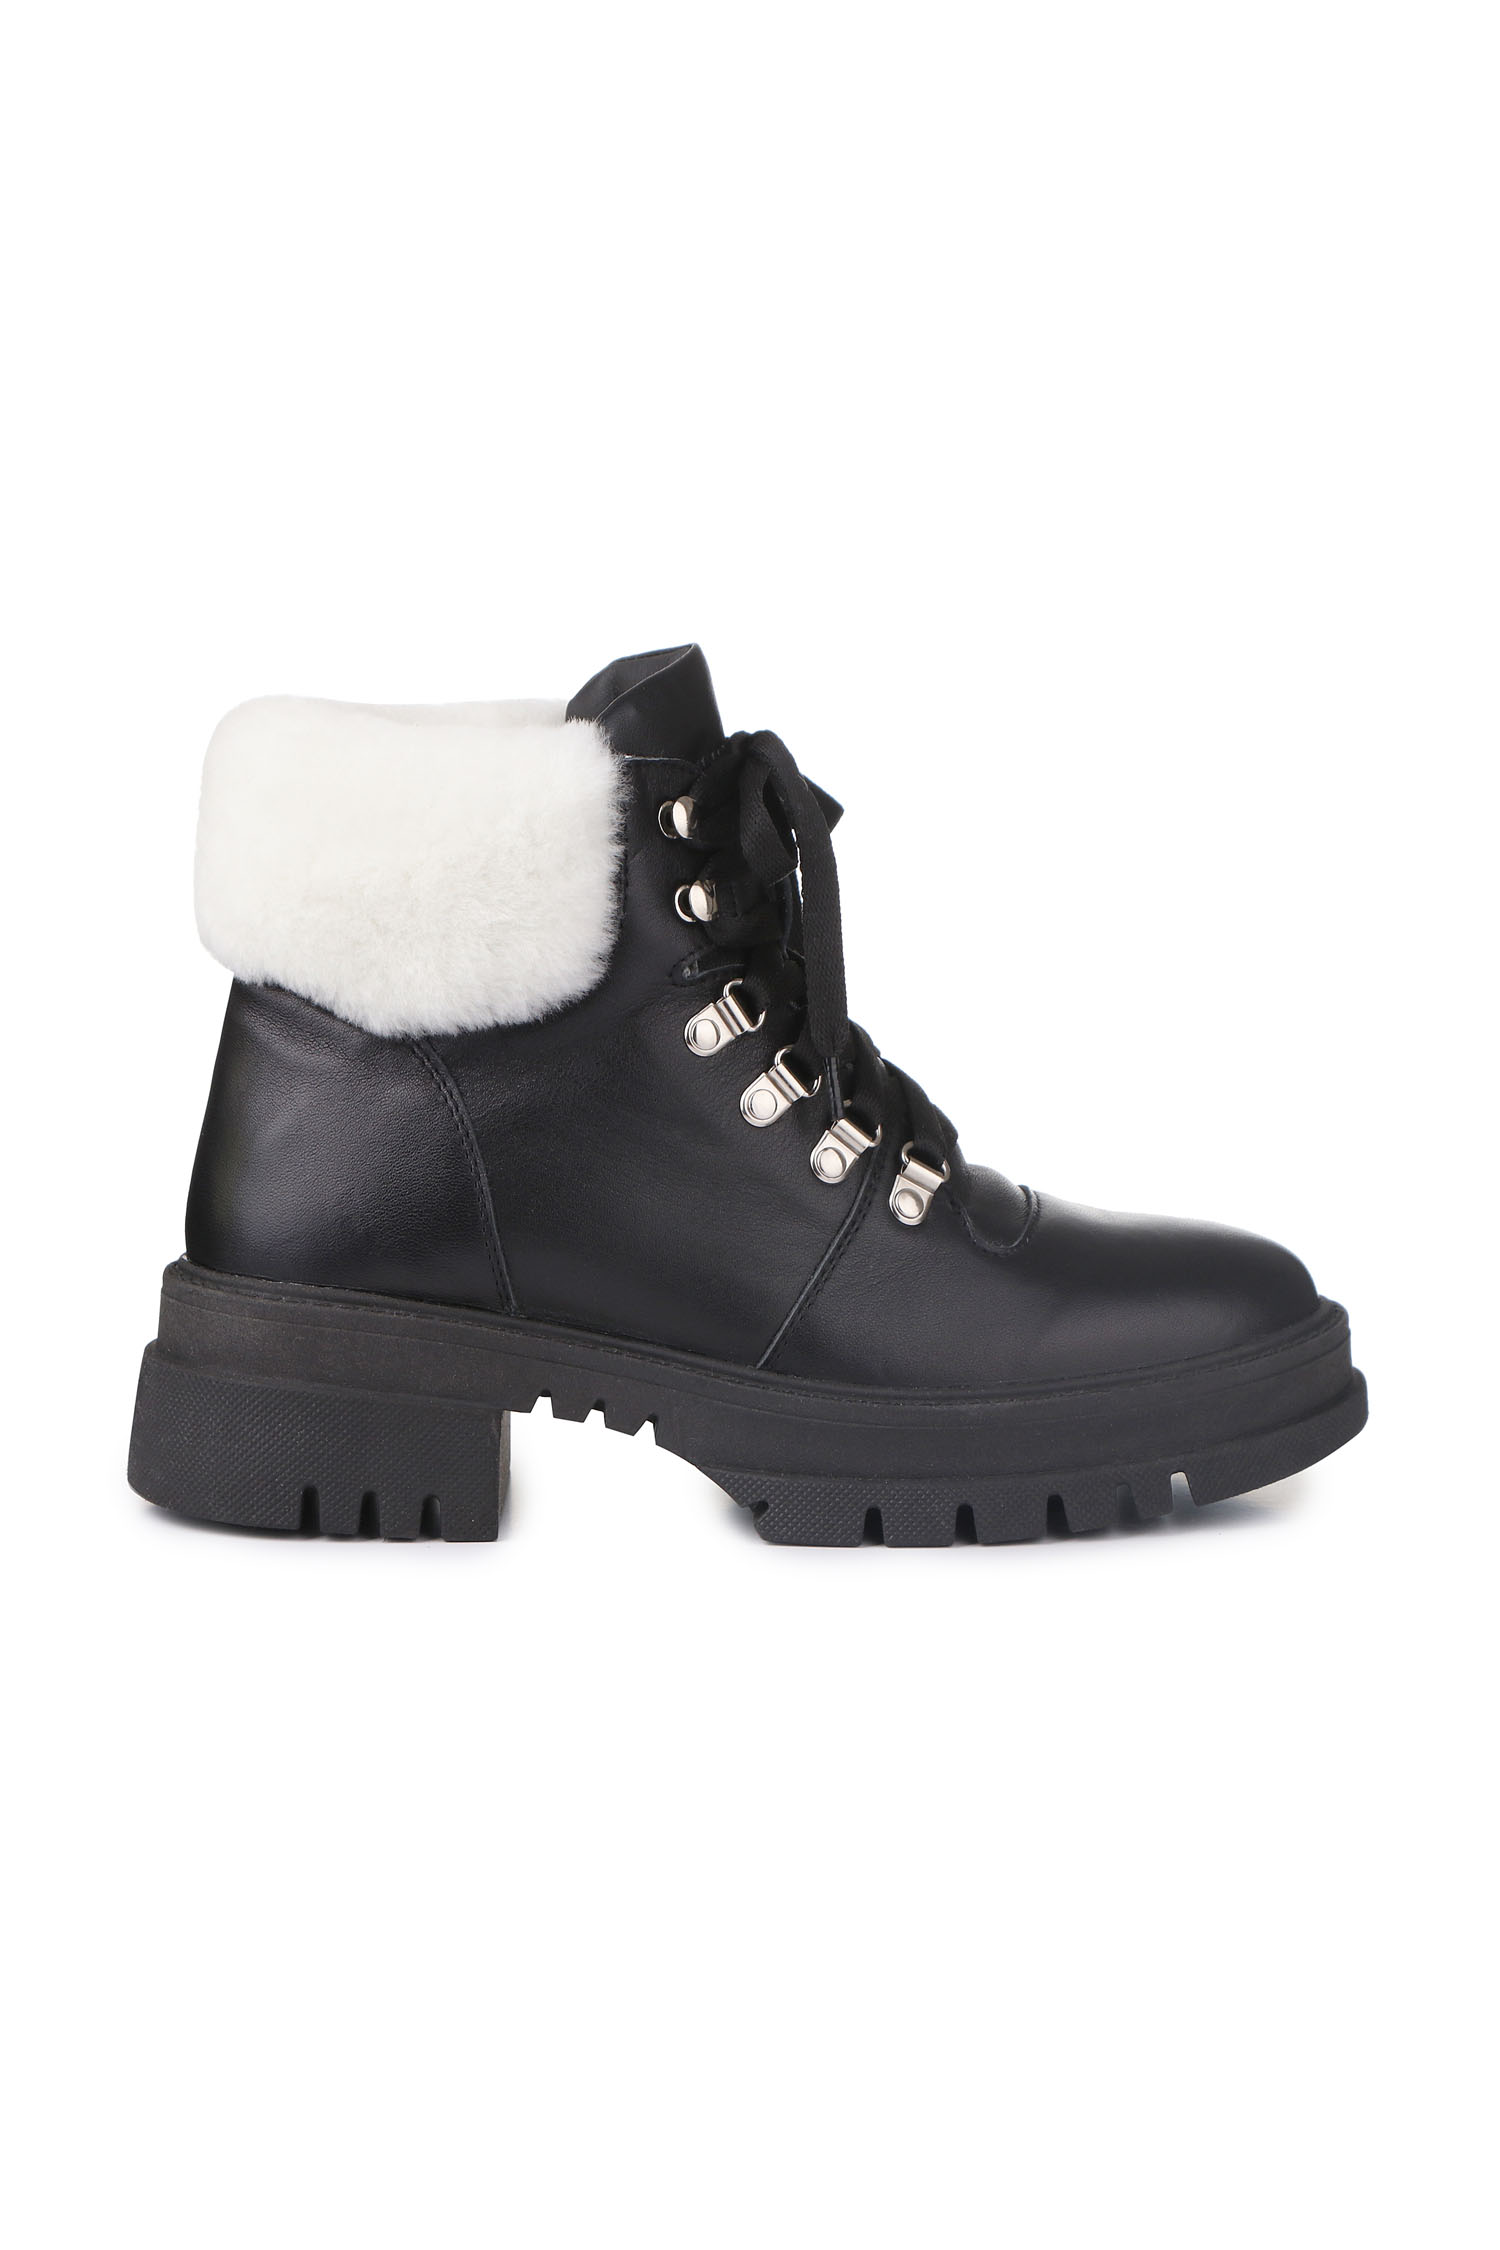 Зимові черевики Hiking boots чорні з білим хутром - THE LACE фото 123279